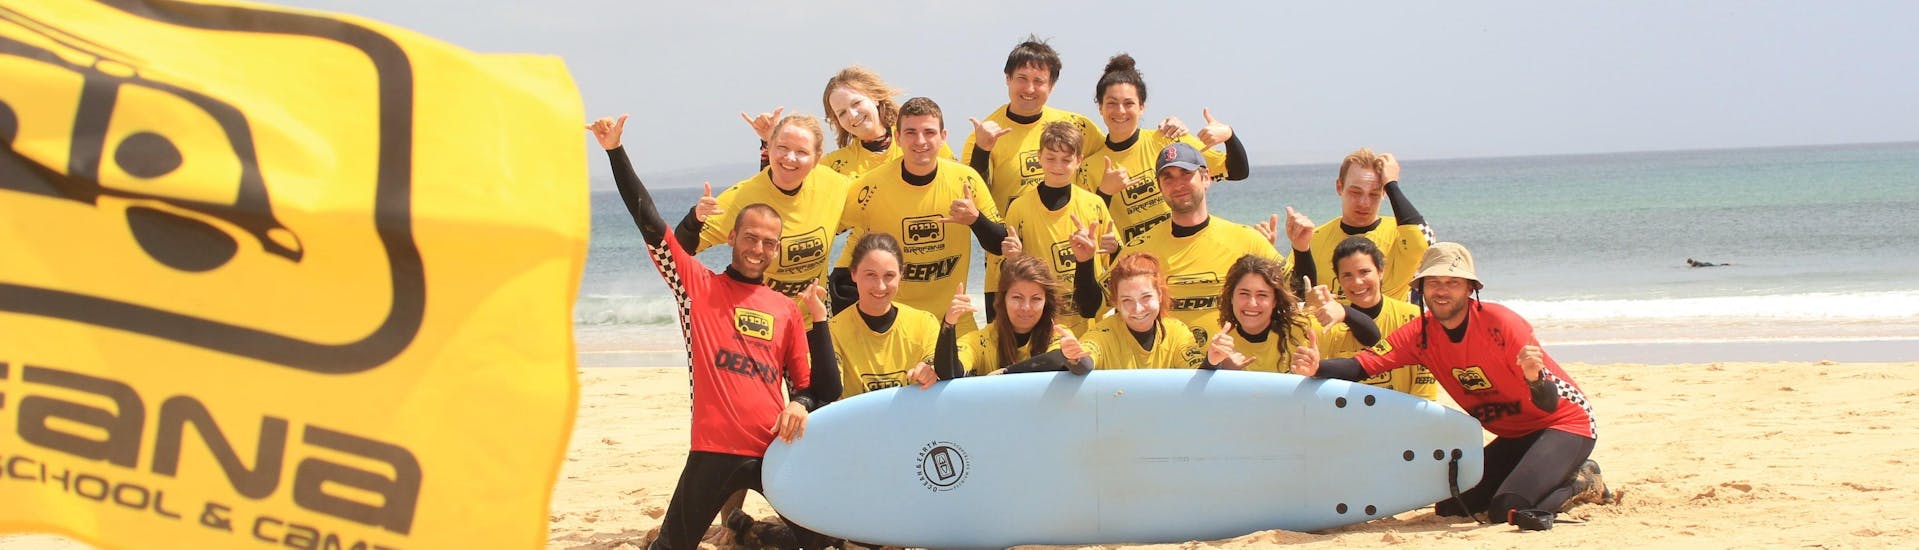 Un gruppo di felici surfisti posa per una foto dopo aver partecipato alle lezioni di surf a Praia da Arrifana organizzate dalla Arrifana Surf School.